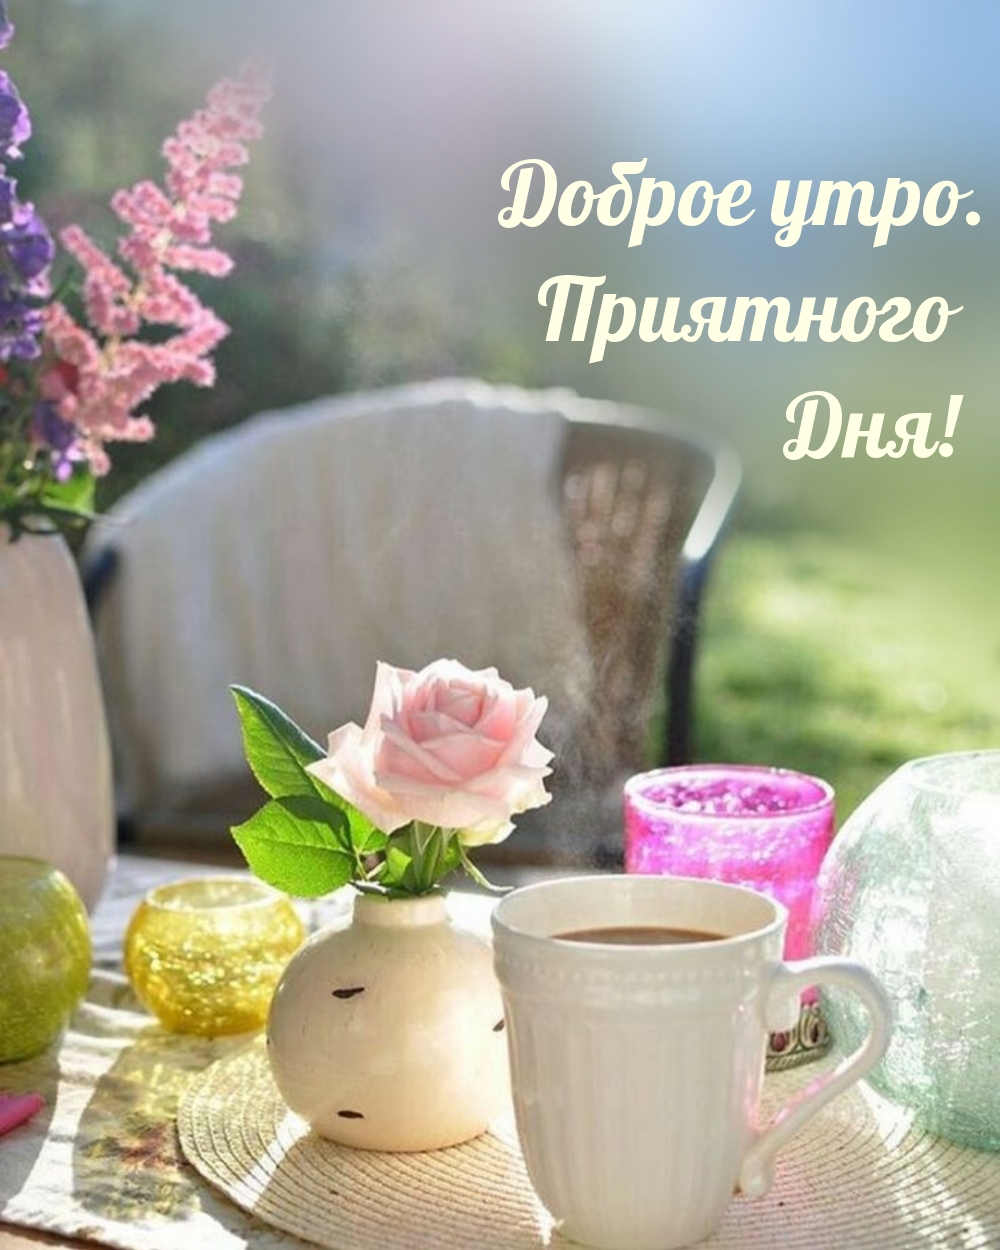 Это было красивое утро. Весеннее чаепитие. Чай цветок. Прекрасного утра.